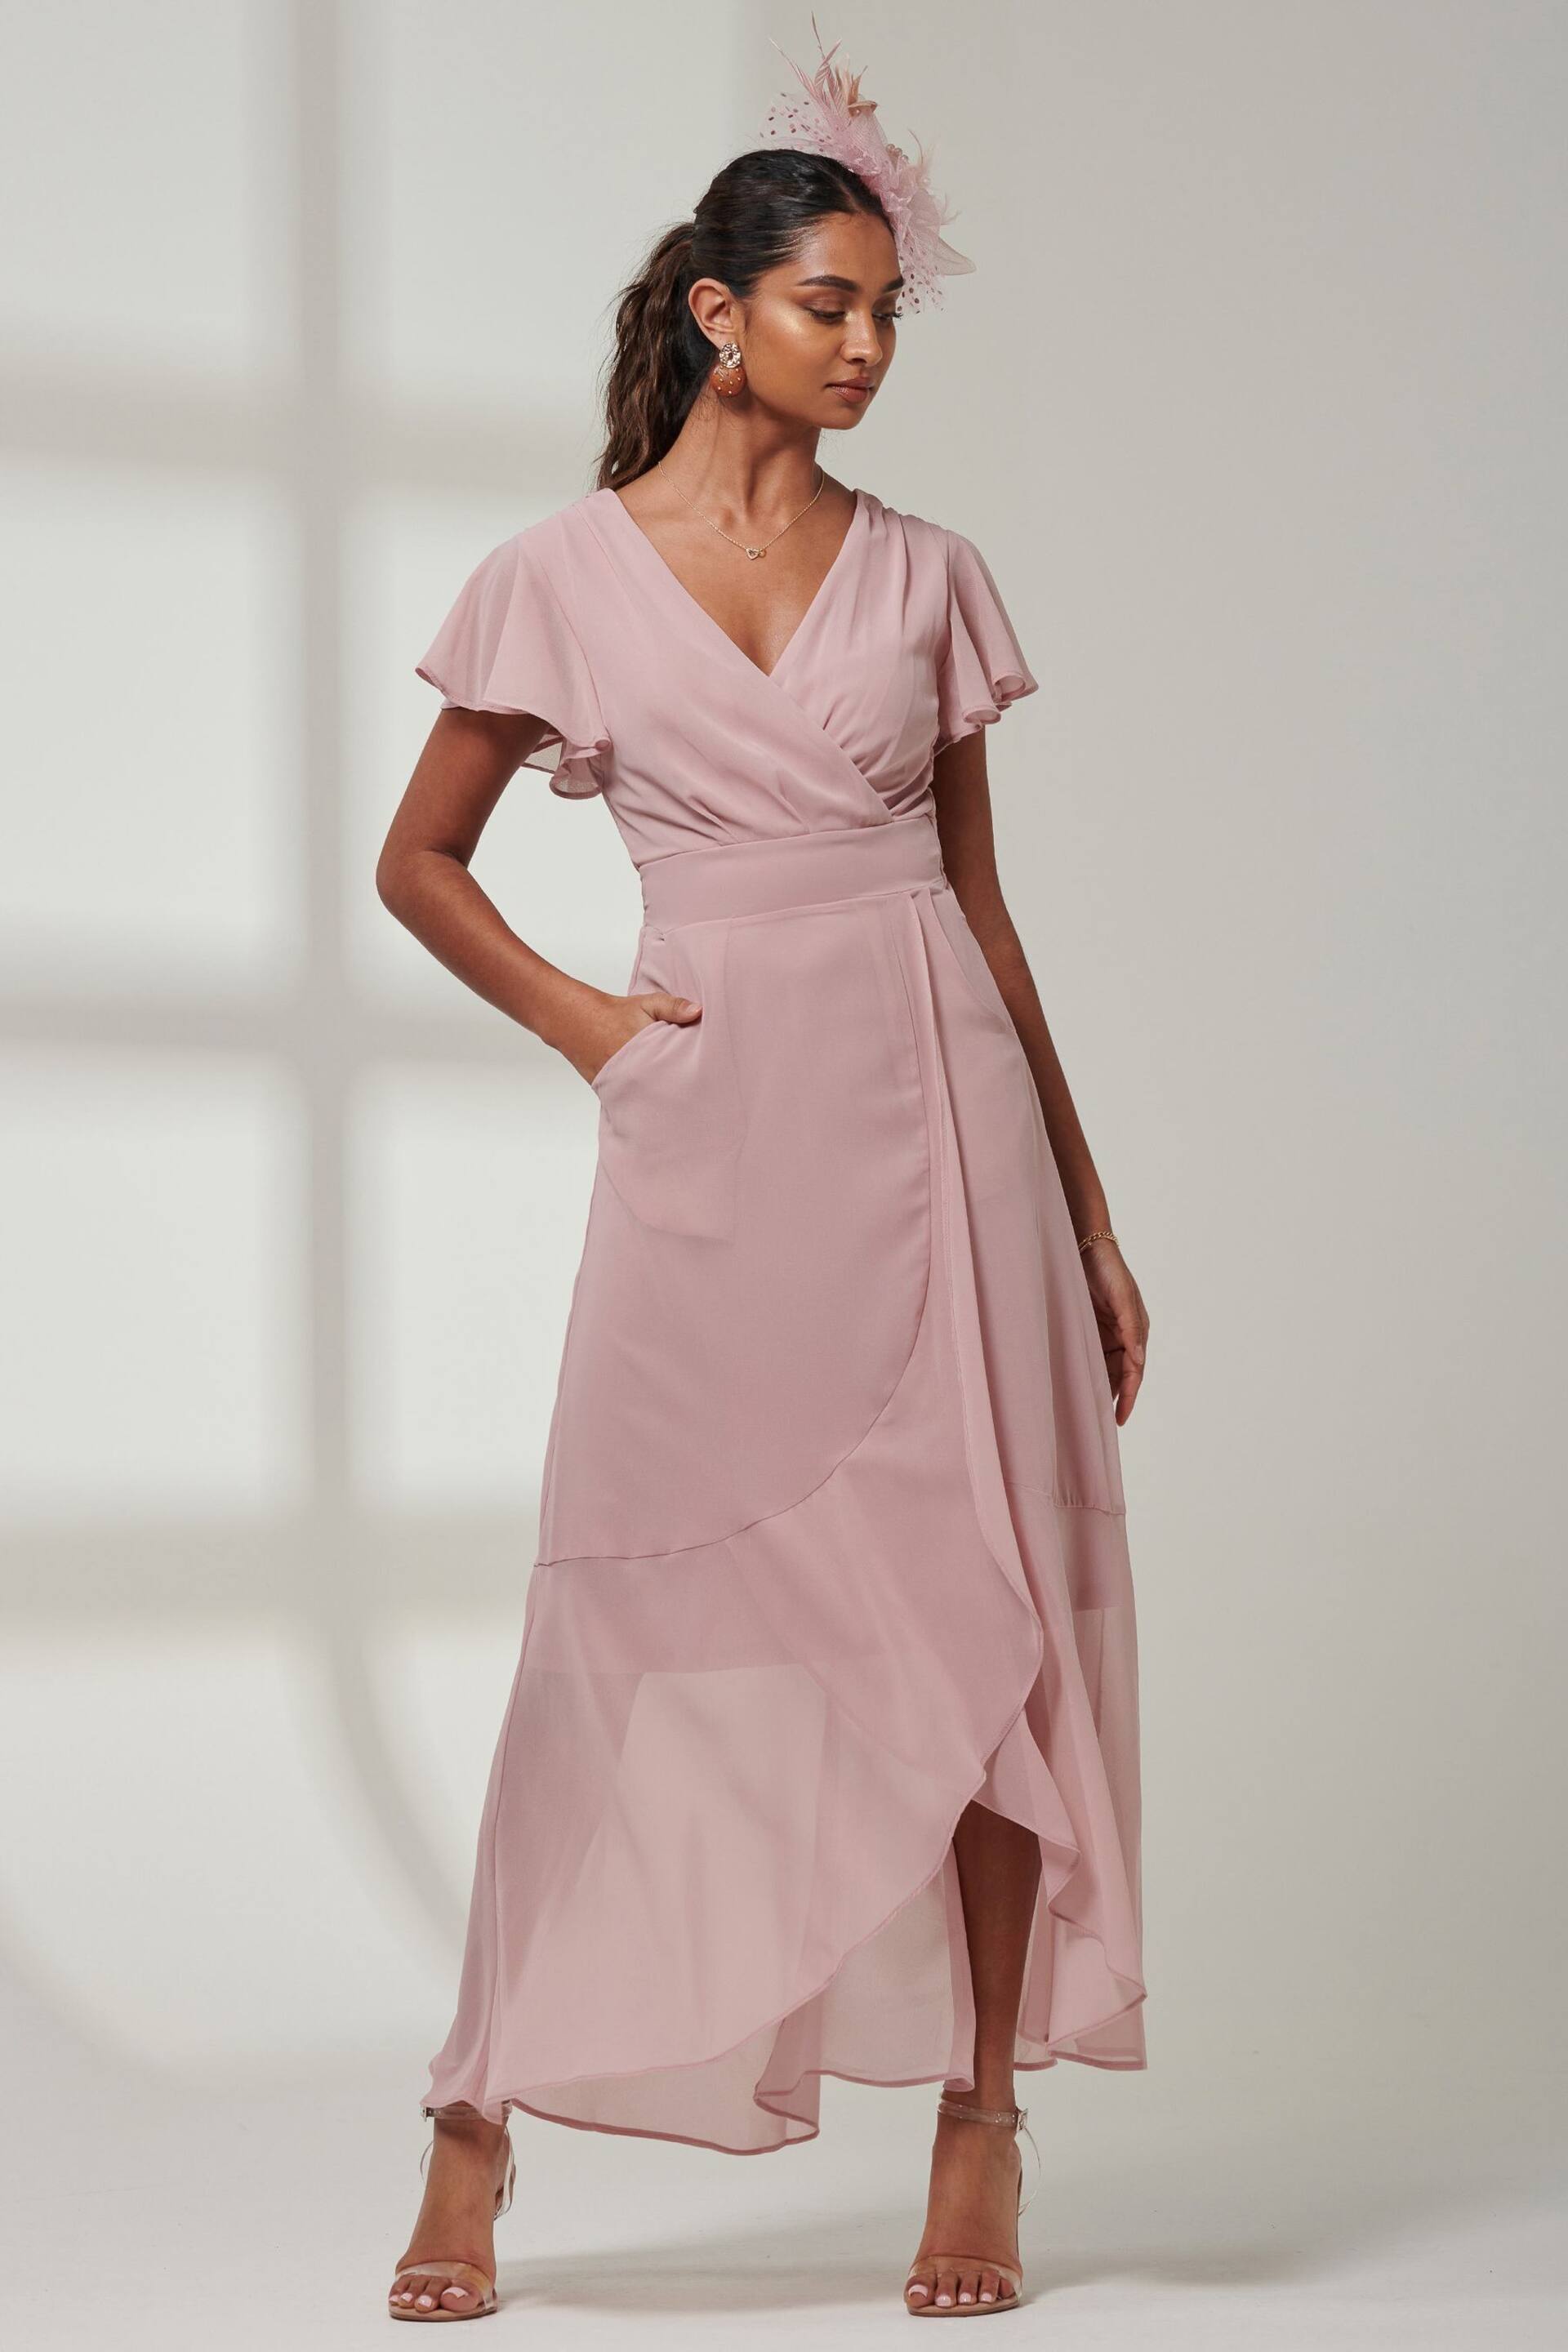 Jolie Moi Pink Vicky Chiffon Frill Maxi Dress - Image 6 of 6